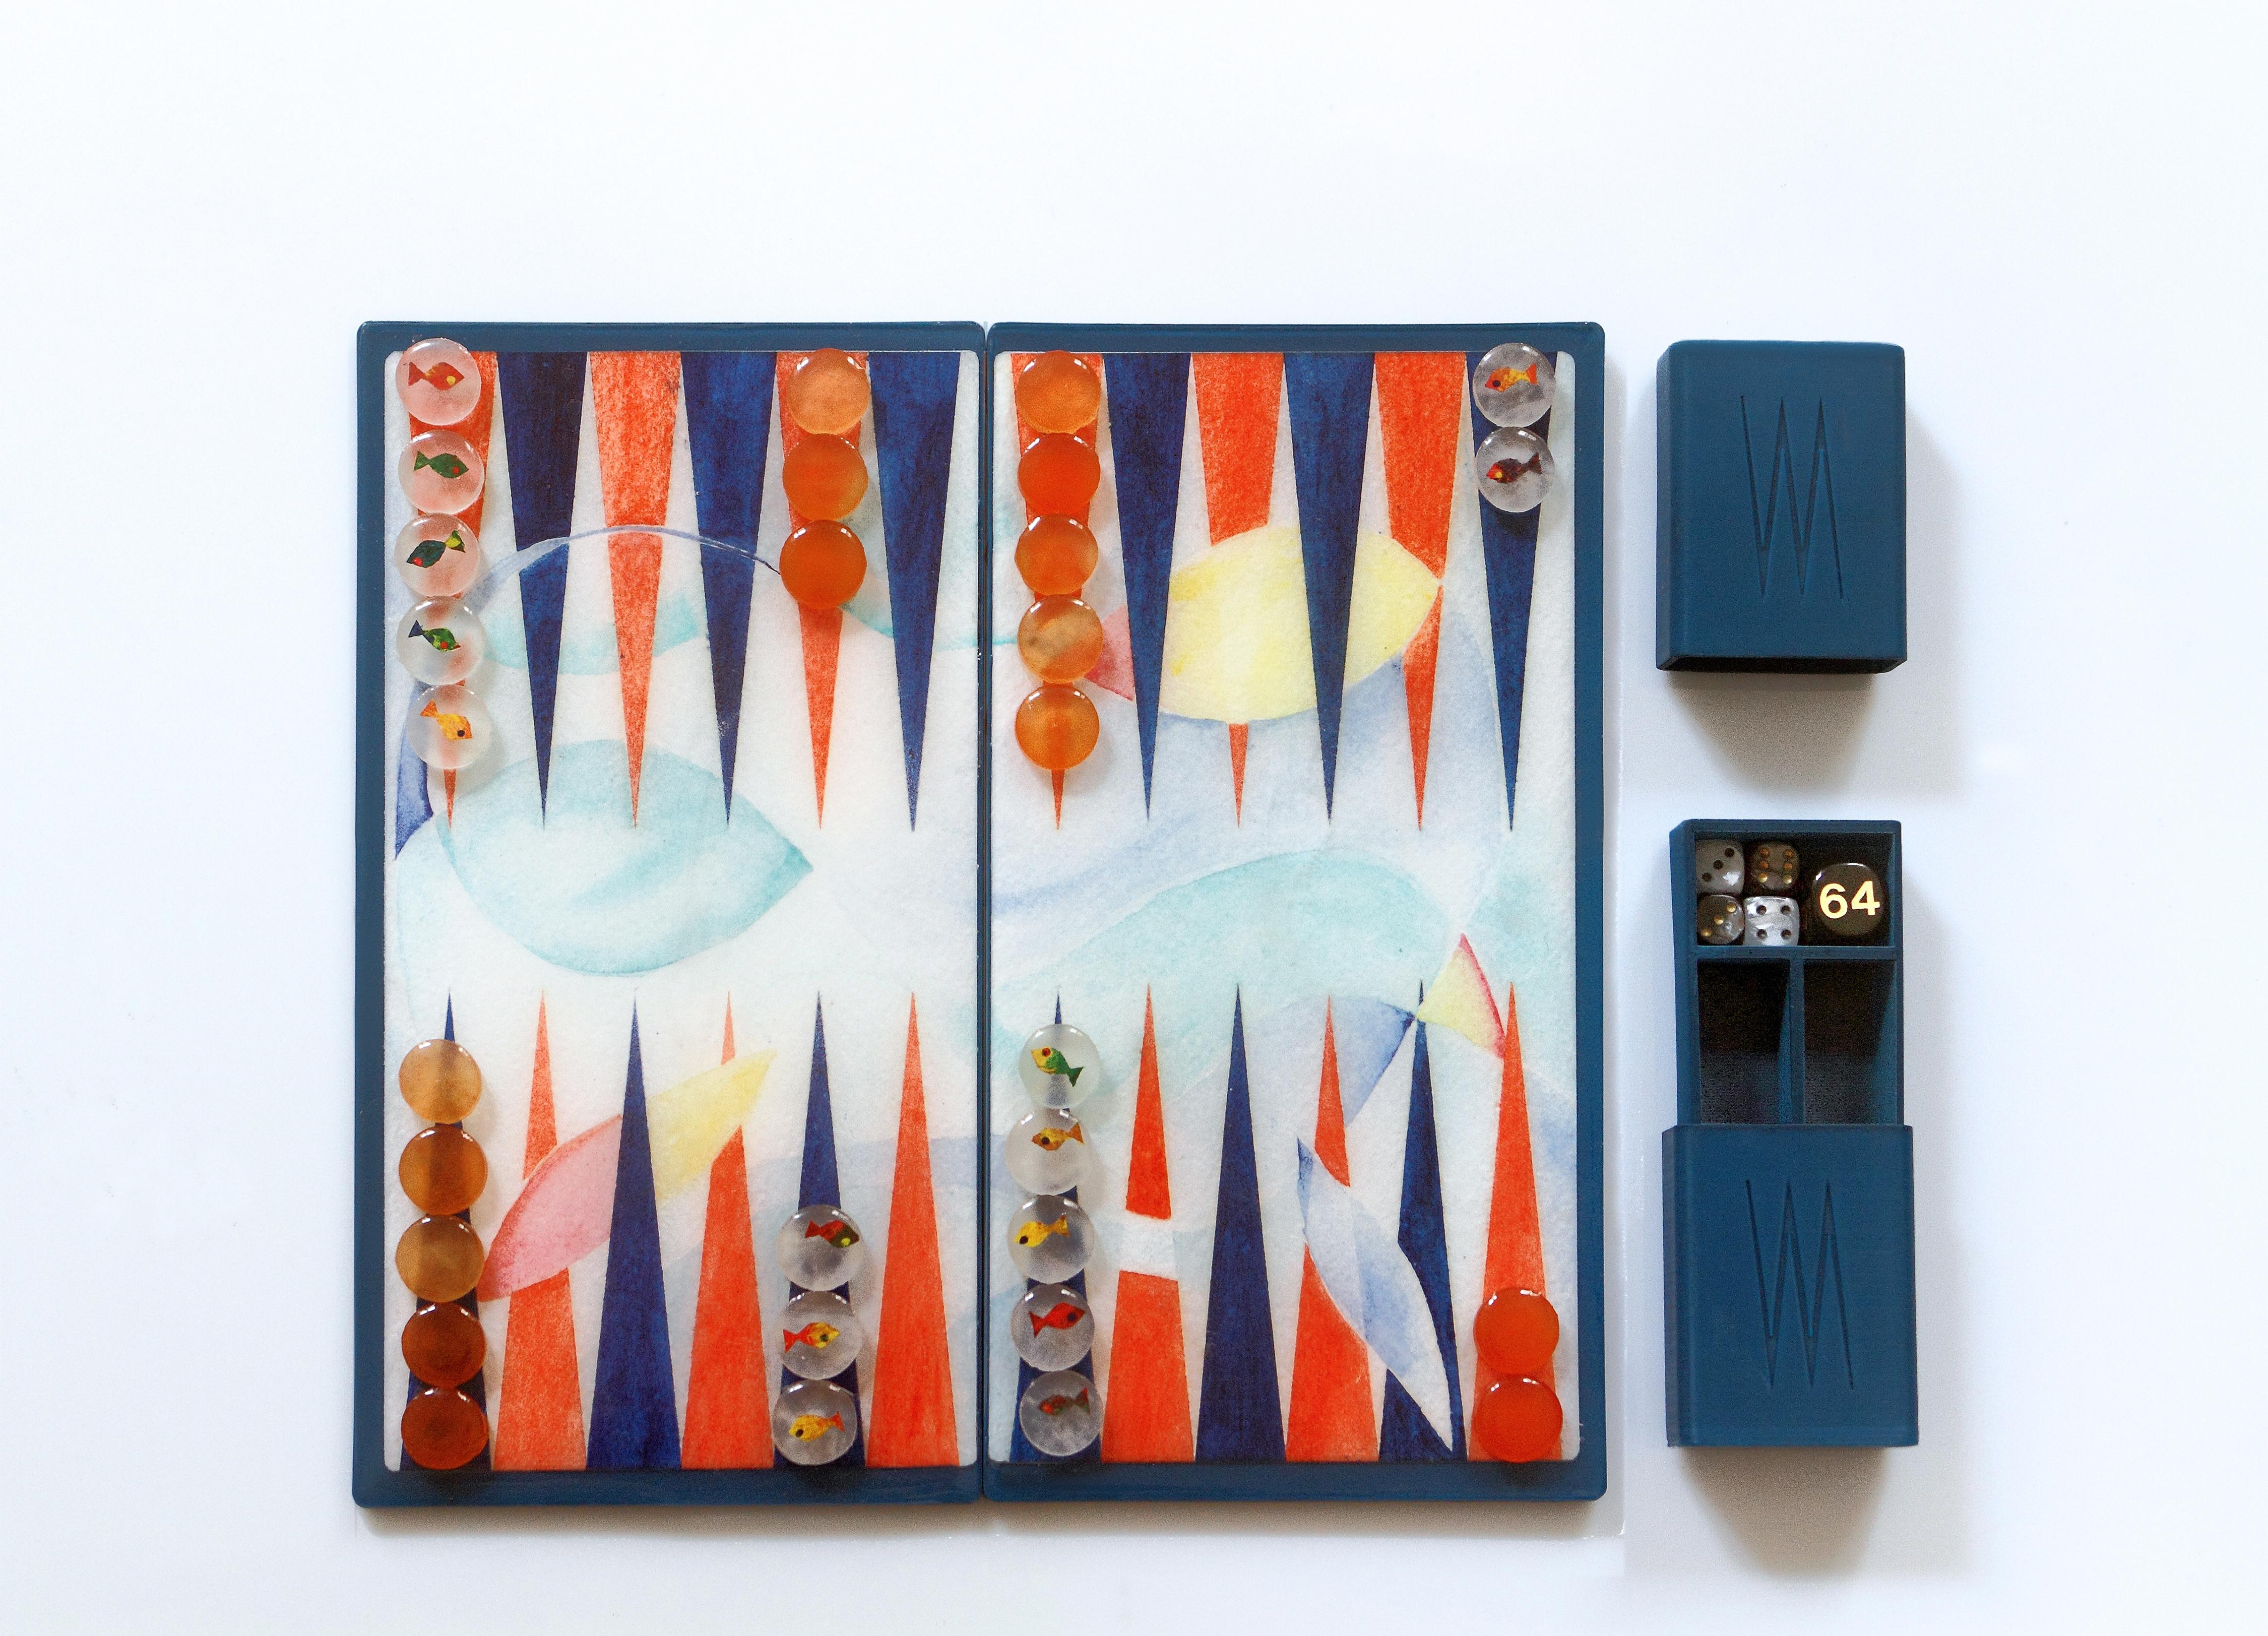 La planche de backgammon est une collection artisanale en édition limitée (100 pièces) conçue par la jeune milanaise Valeria Molinari pour Dilmos. Le projet, composé de quatre planches inspirées des éléments de l'eau, de l'air, du feu et de la